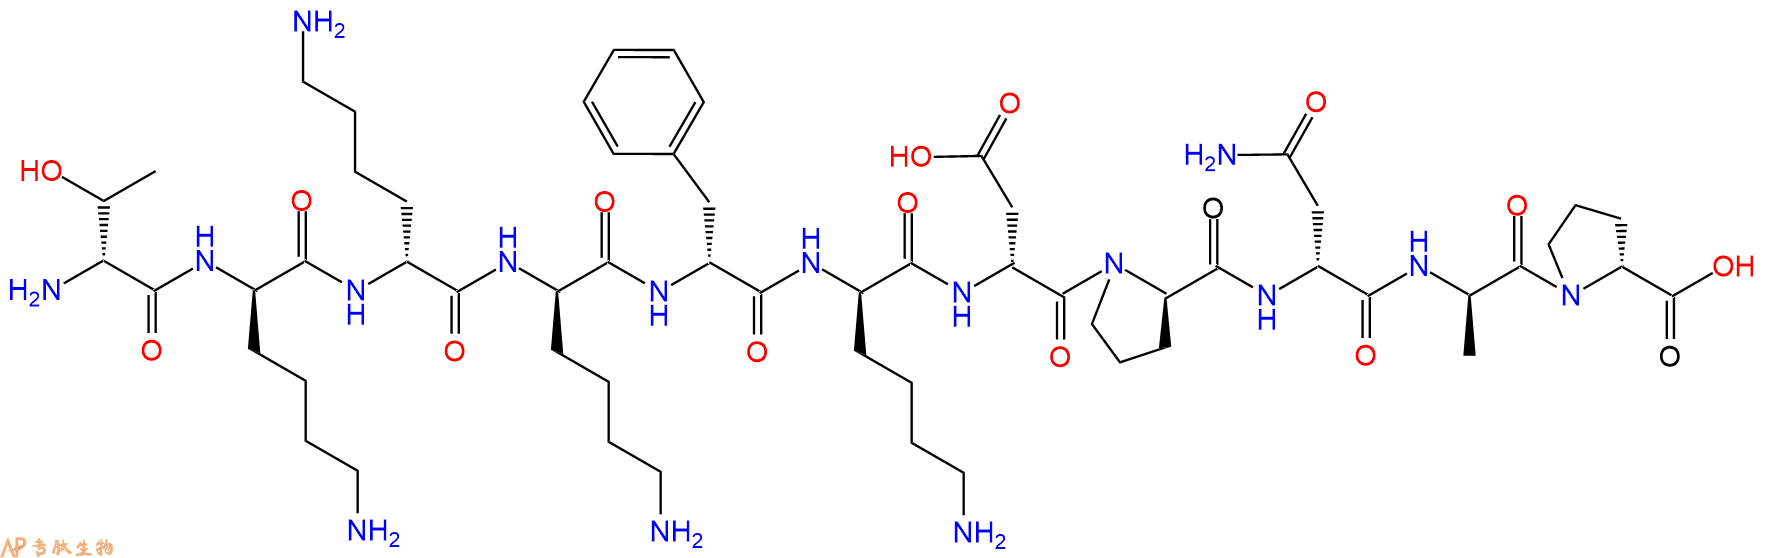 专肽生物产品H2N-DThr-DLys-DLys-DLys-DPhe-DLys-DAsp-DPro-DAsn-D